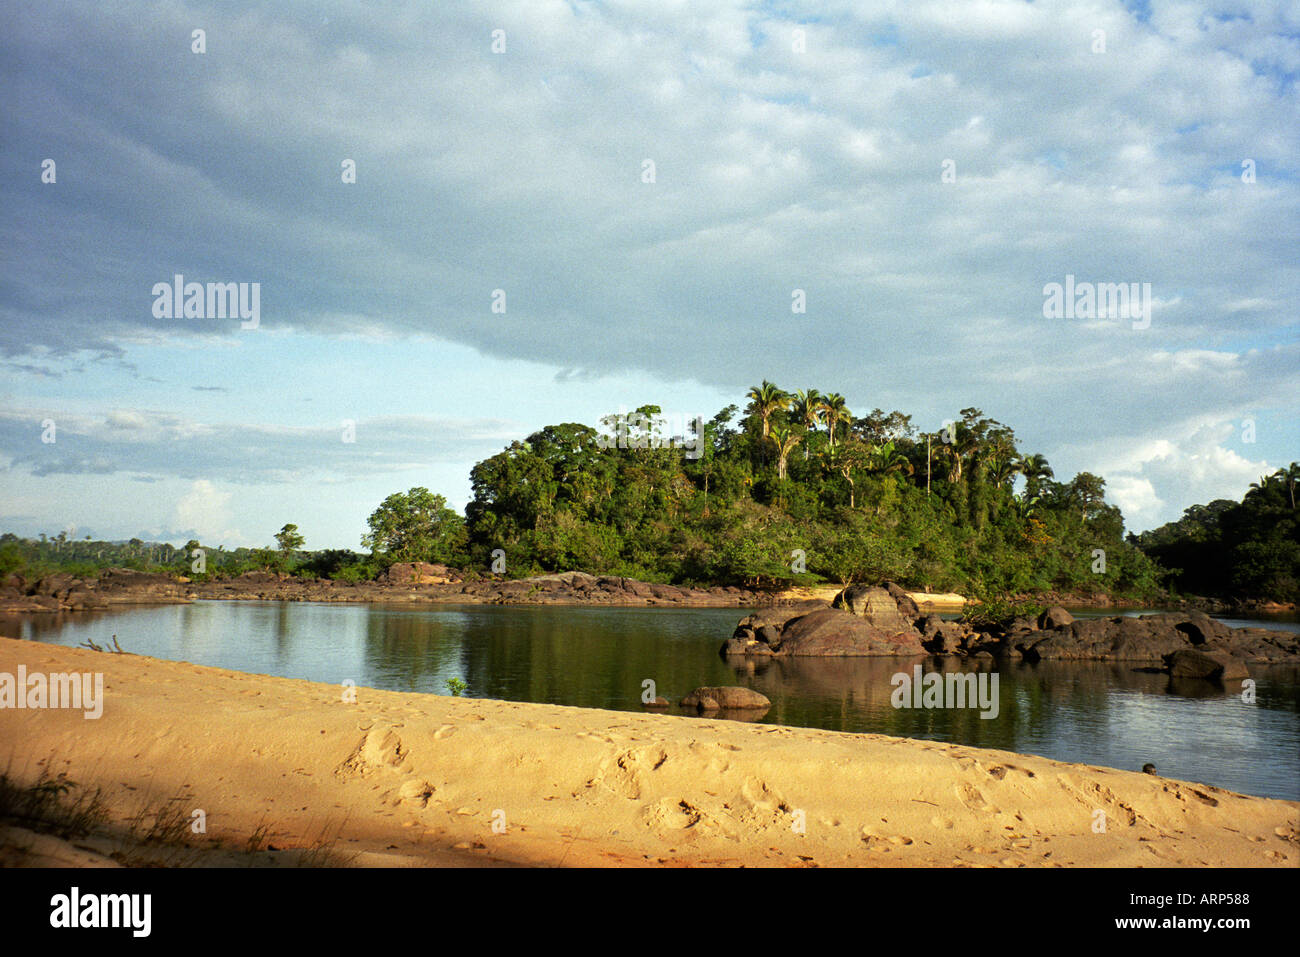 Vue sur l'île de Tataquara en face de l'eau avec banc de sable en premier plan. Île Tataquara, État de Para, Brésil. Banque D'Images